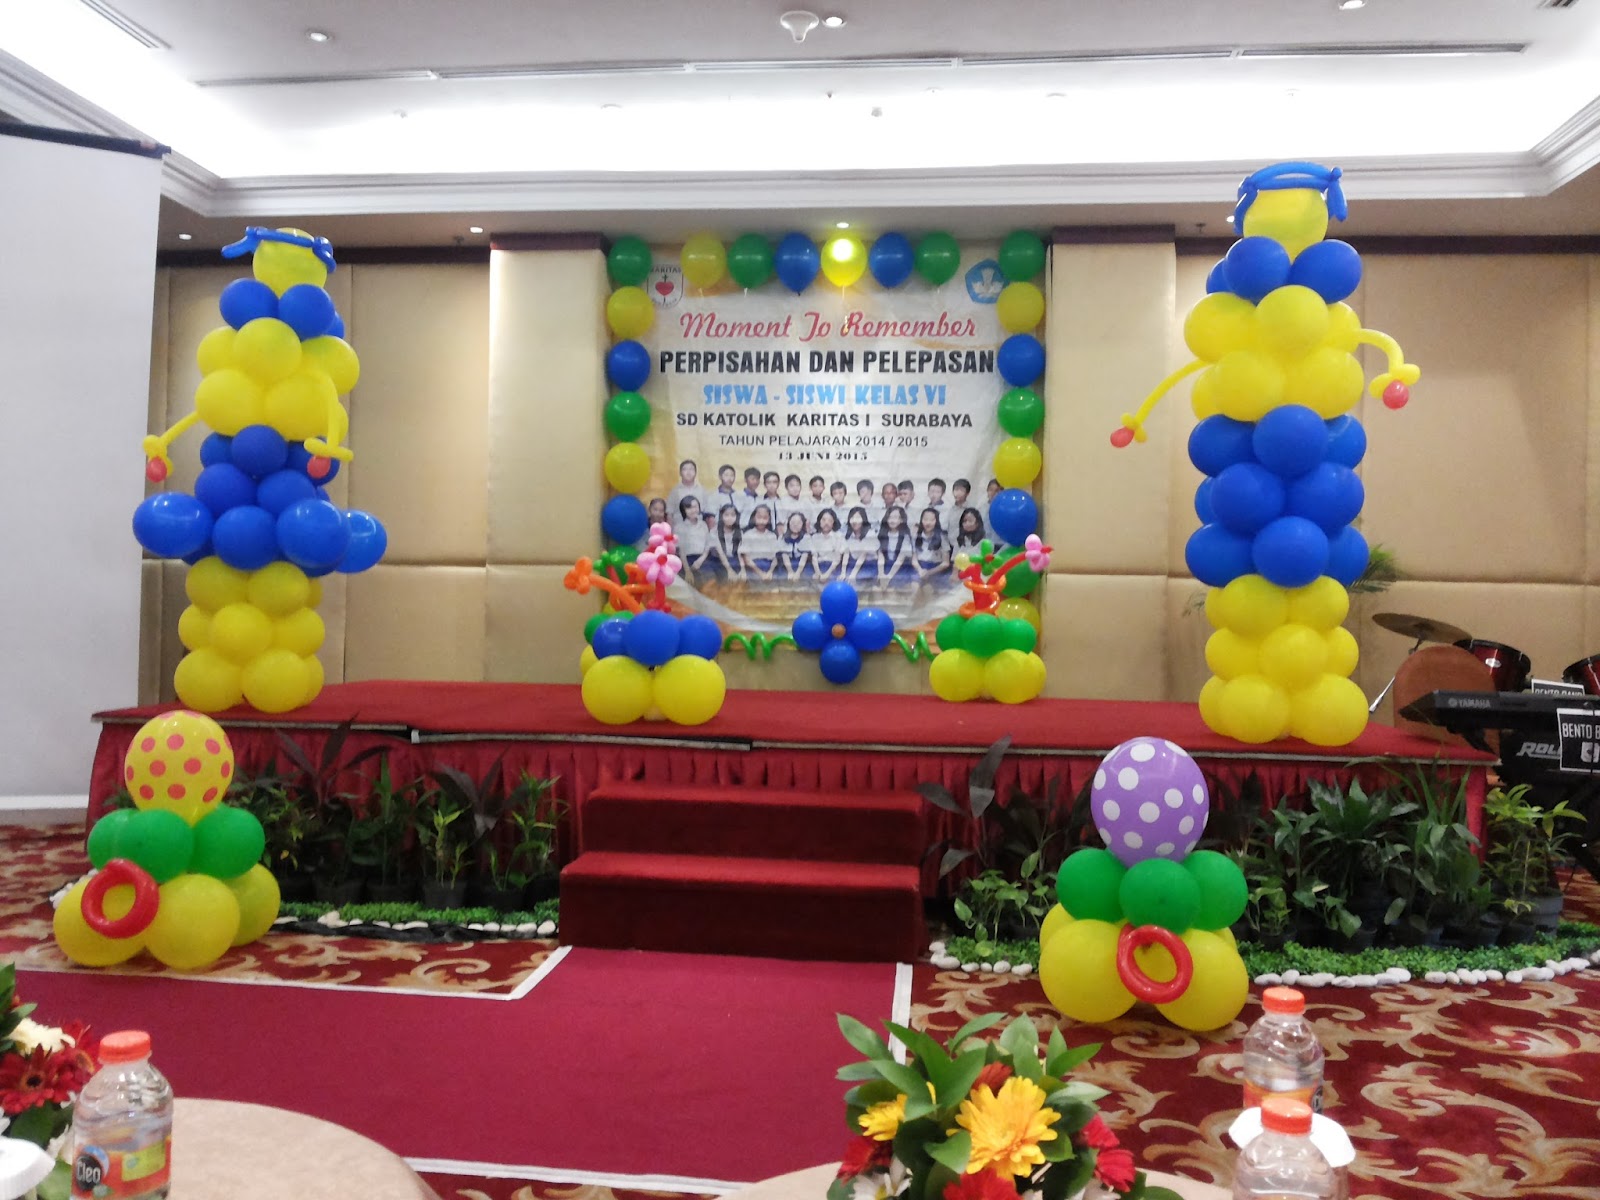  Dekorasi  Balon  Surabaya  Dekorasi  balon  di Somerset Surabaya 